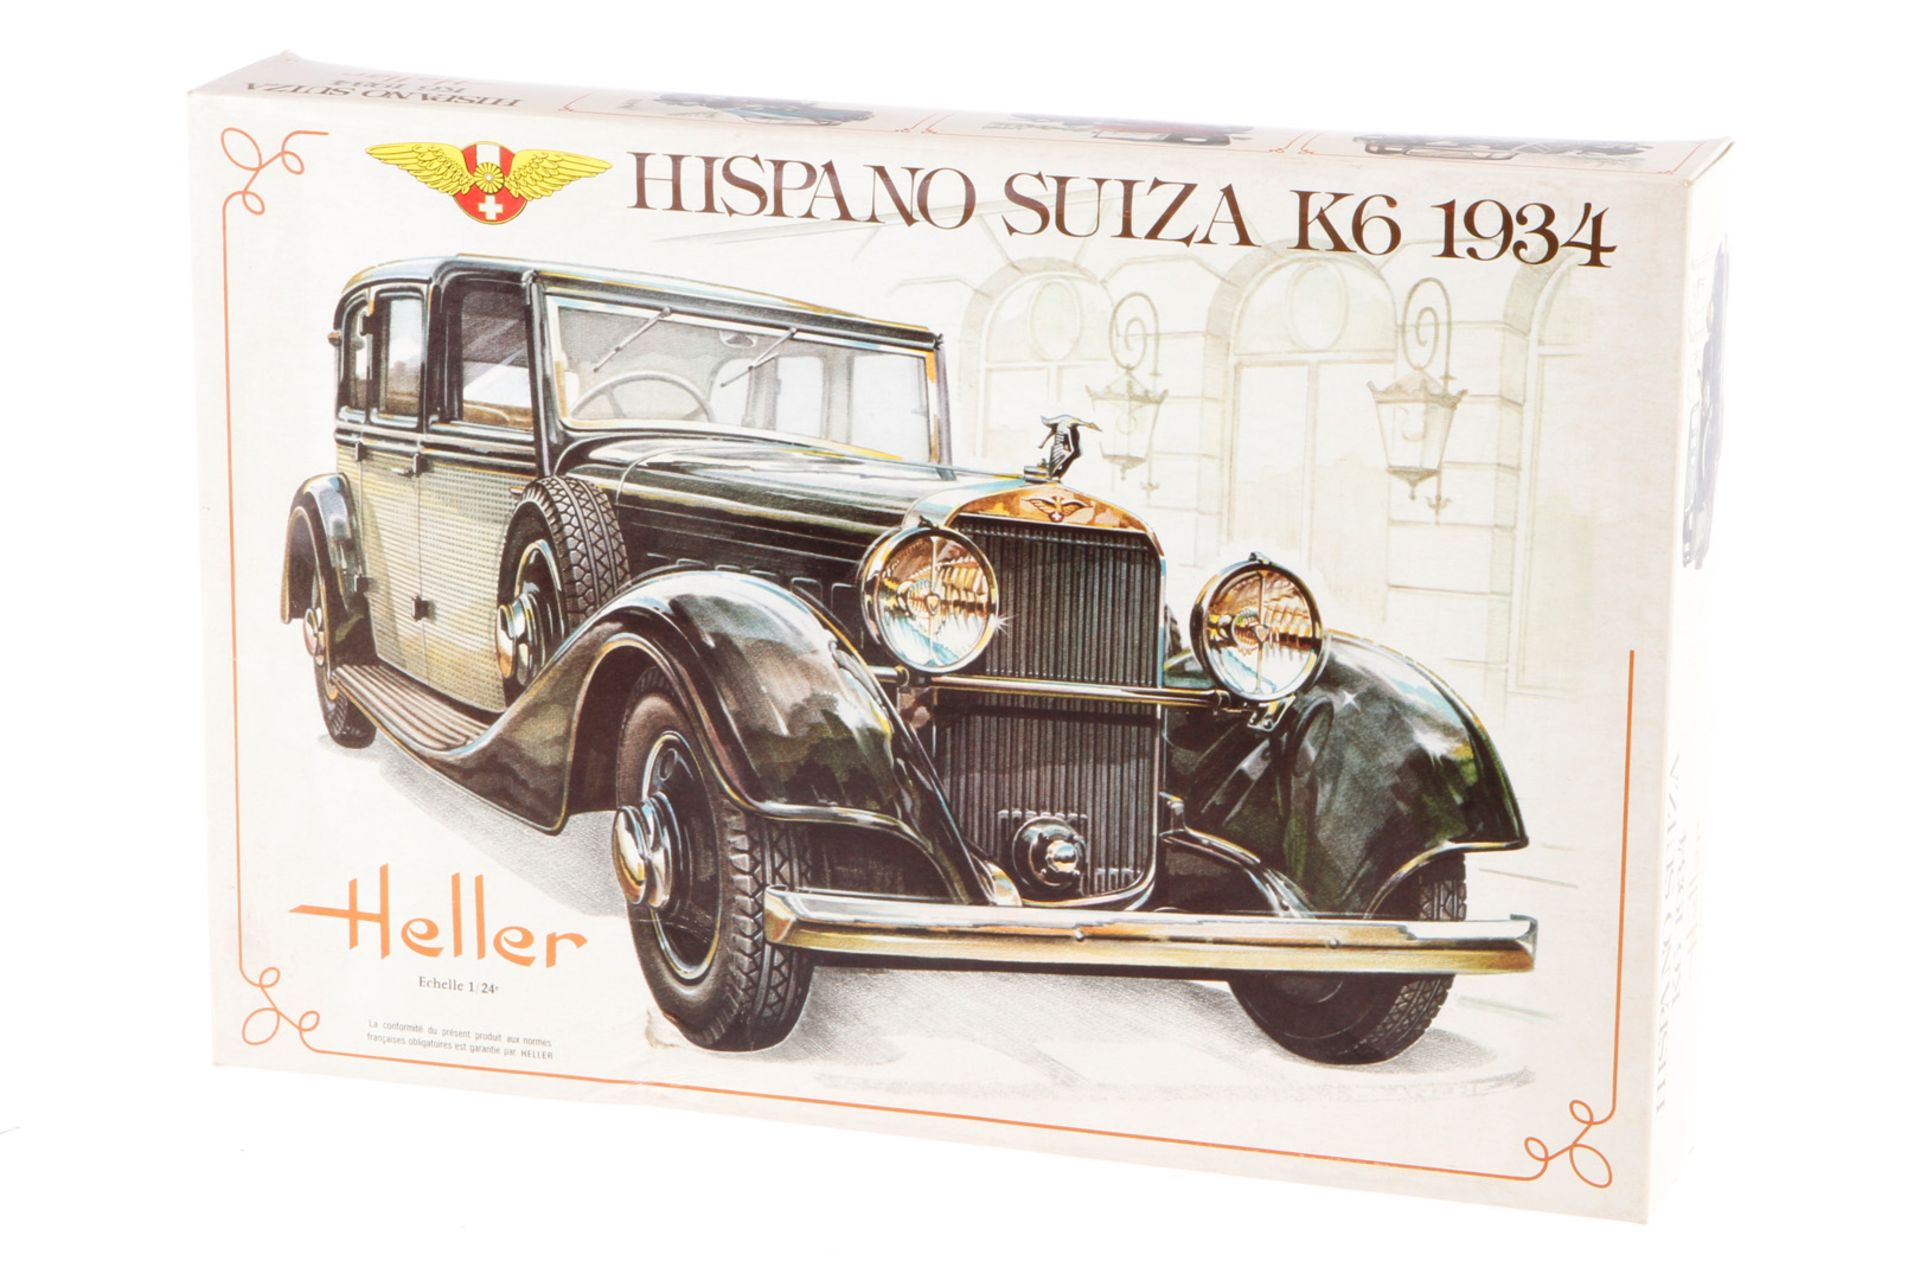 Heller Bausatz Hispano Suiza 733, Maßstab 1:24, wohl komplett, im leicht besch. OK, Alterungsspuren